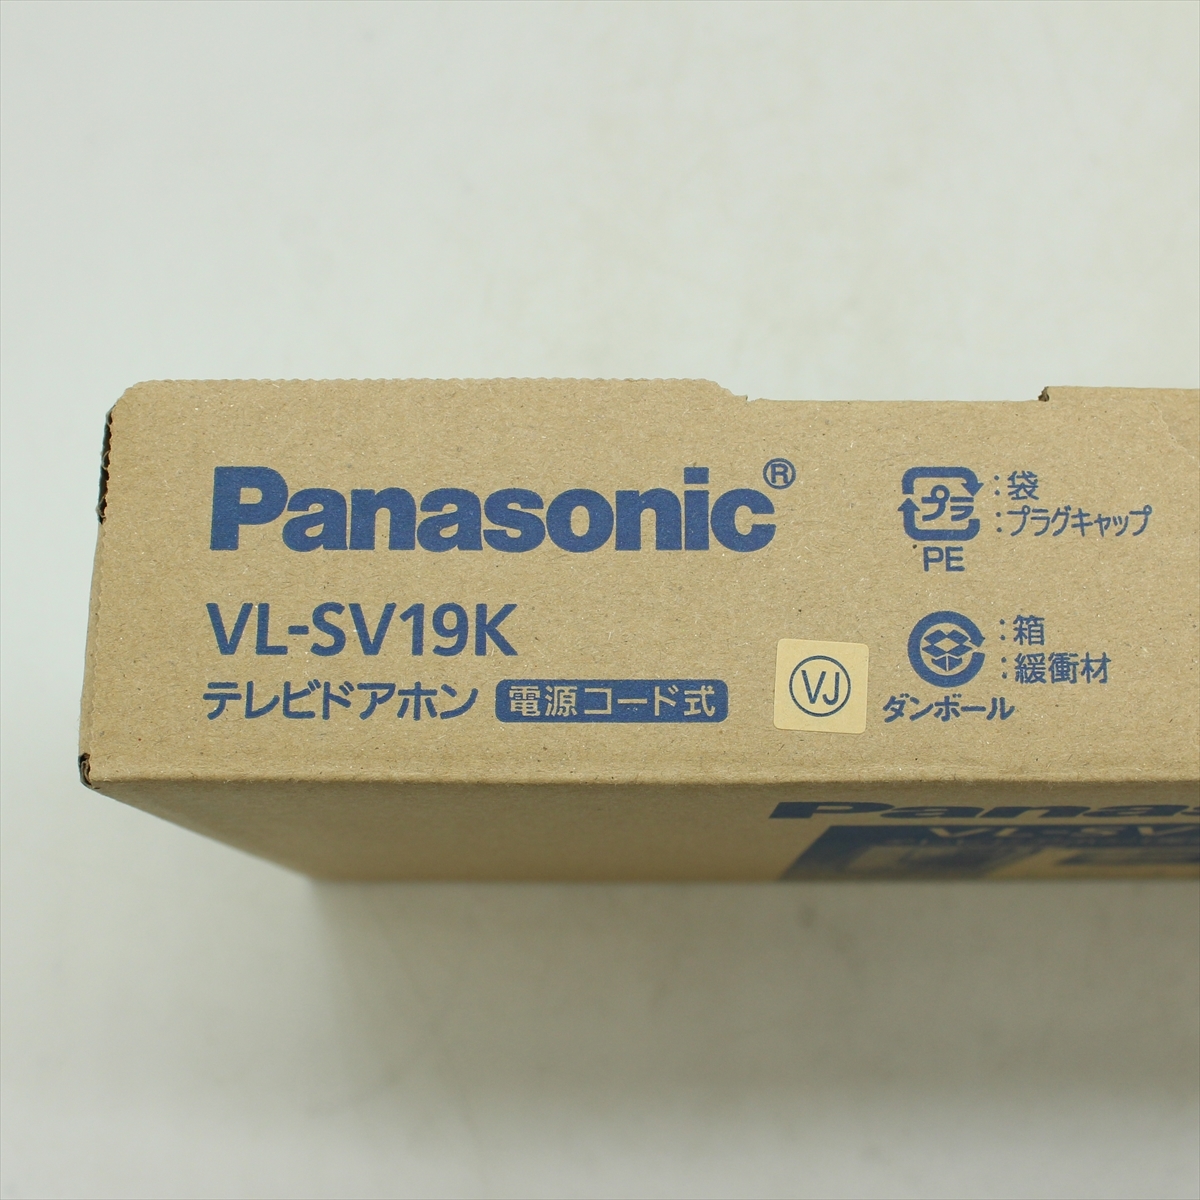 ▼ Panasonic パナソニック VL-SV19K テレビドアホン 未使用品_画像2